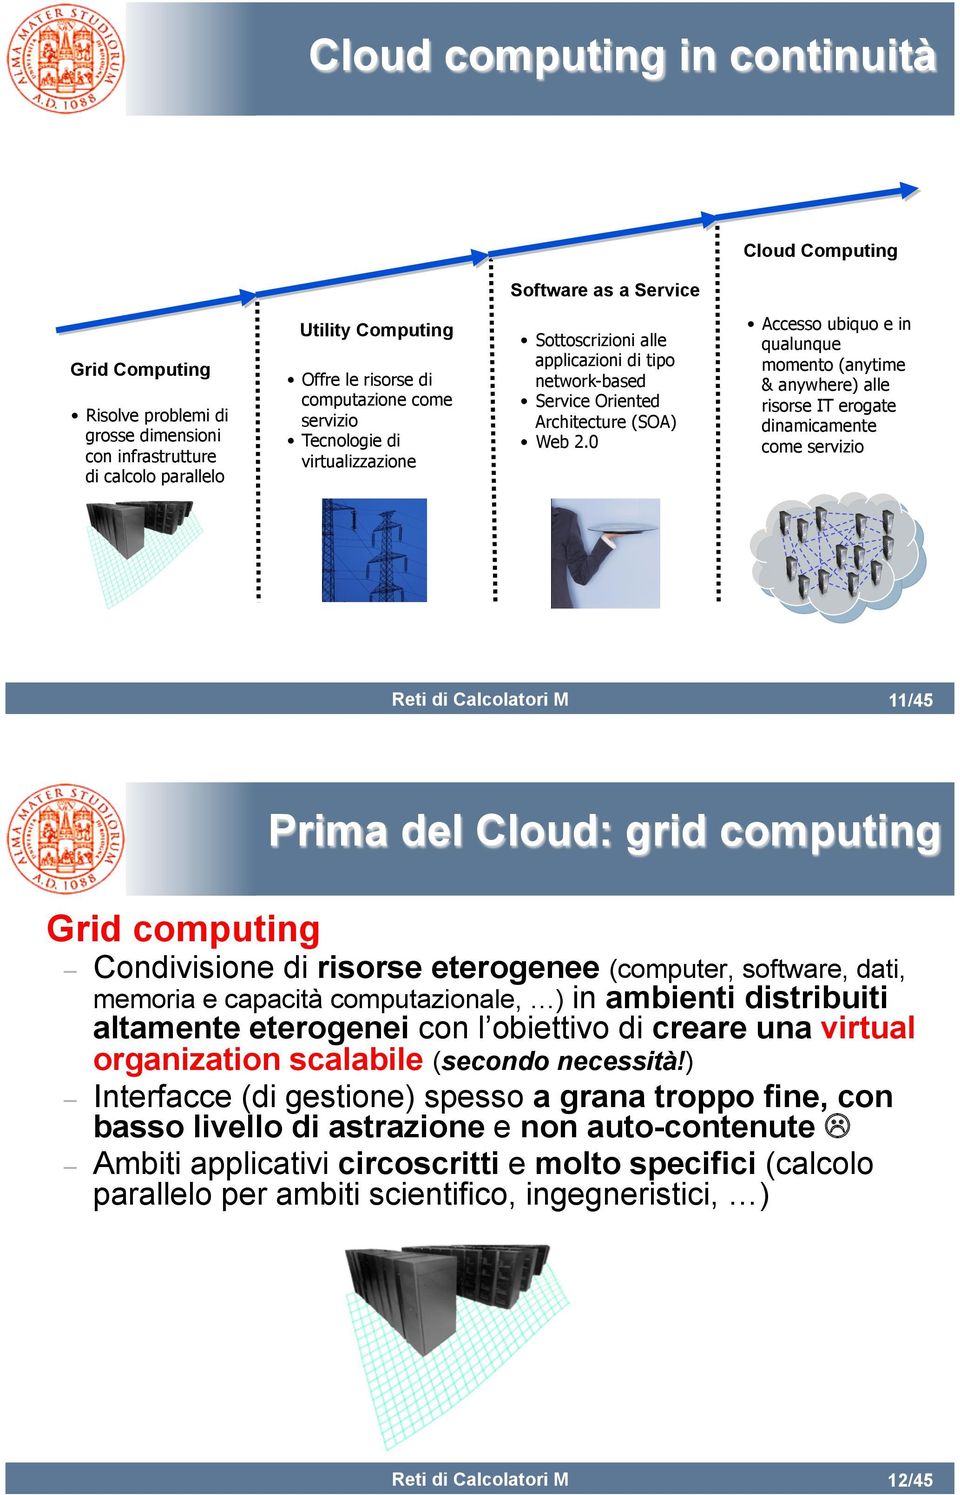 0 Accesso ubiquo e in qualunque momento (anytime & anywhere) alle risorse IT erogate dinamicamente come servizio 11/45 Prima del Cloud: grid computing Grid computing Condivisione di risorse